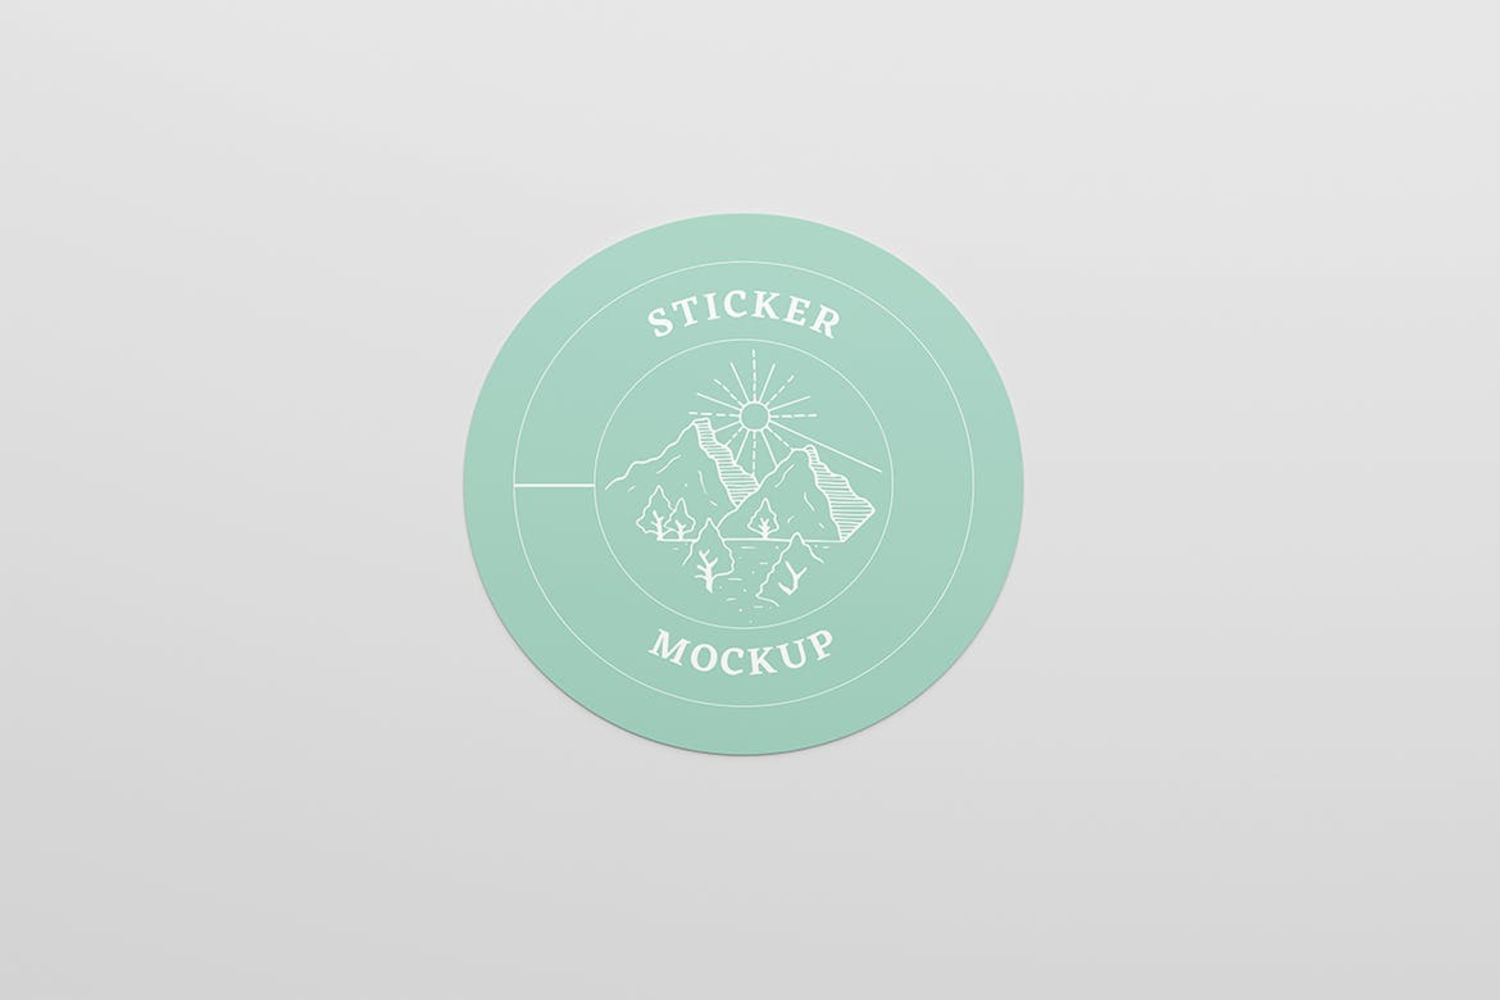 5007 4款圆形贴纸不干胶标签设计展示PS样机 Sticker Mockup@GOOODME.COM